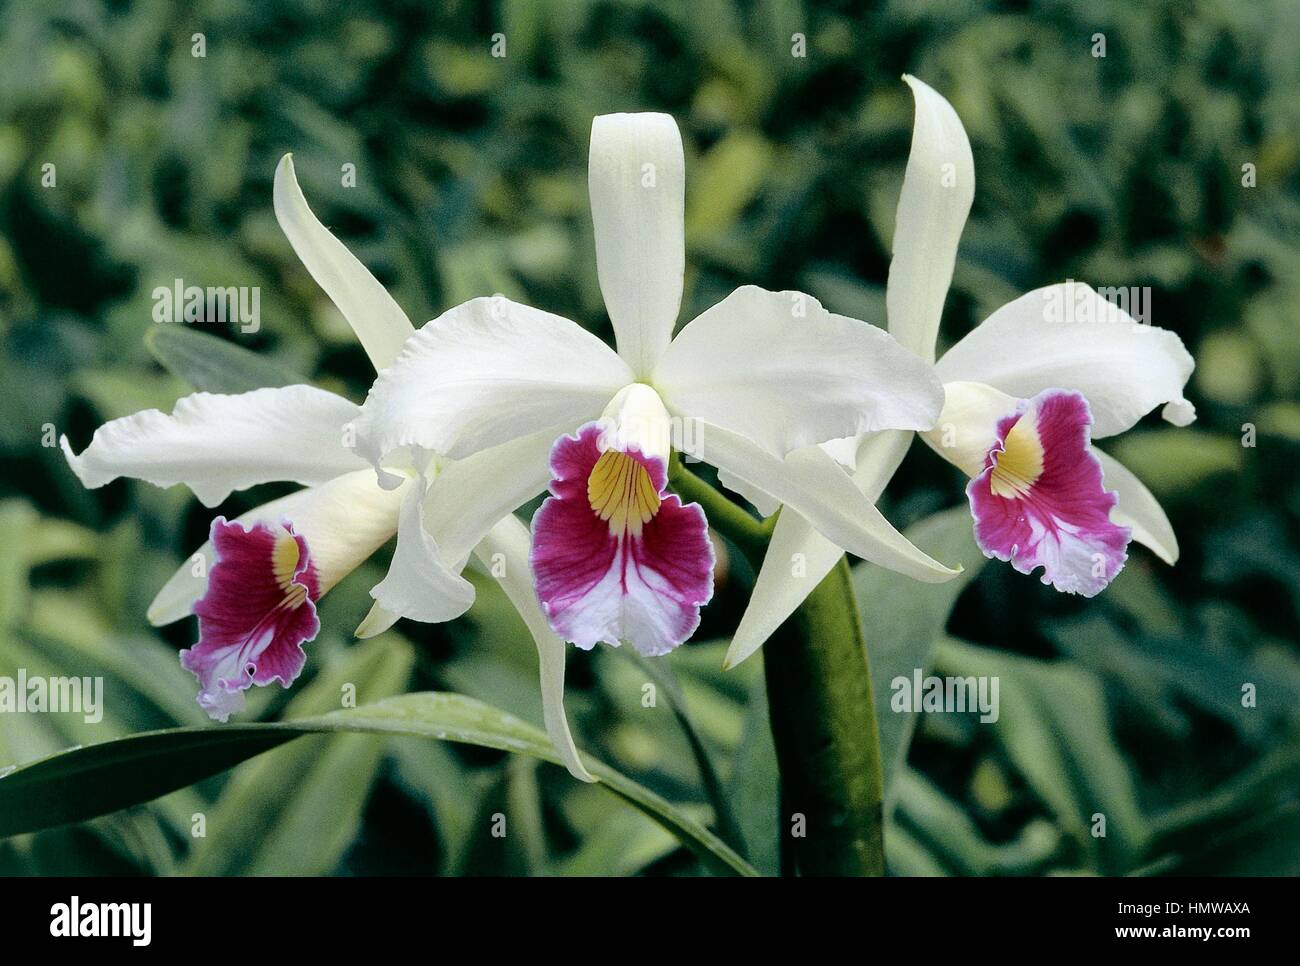 Orchid (Laelia purpurata roxo-bispo), Orchidaceae. Stock Photo